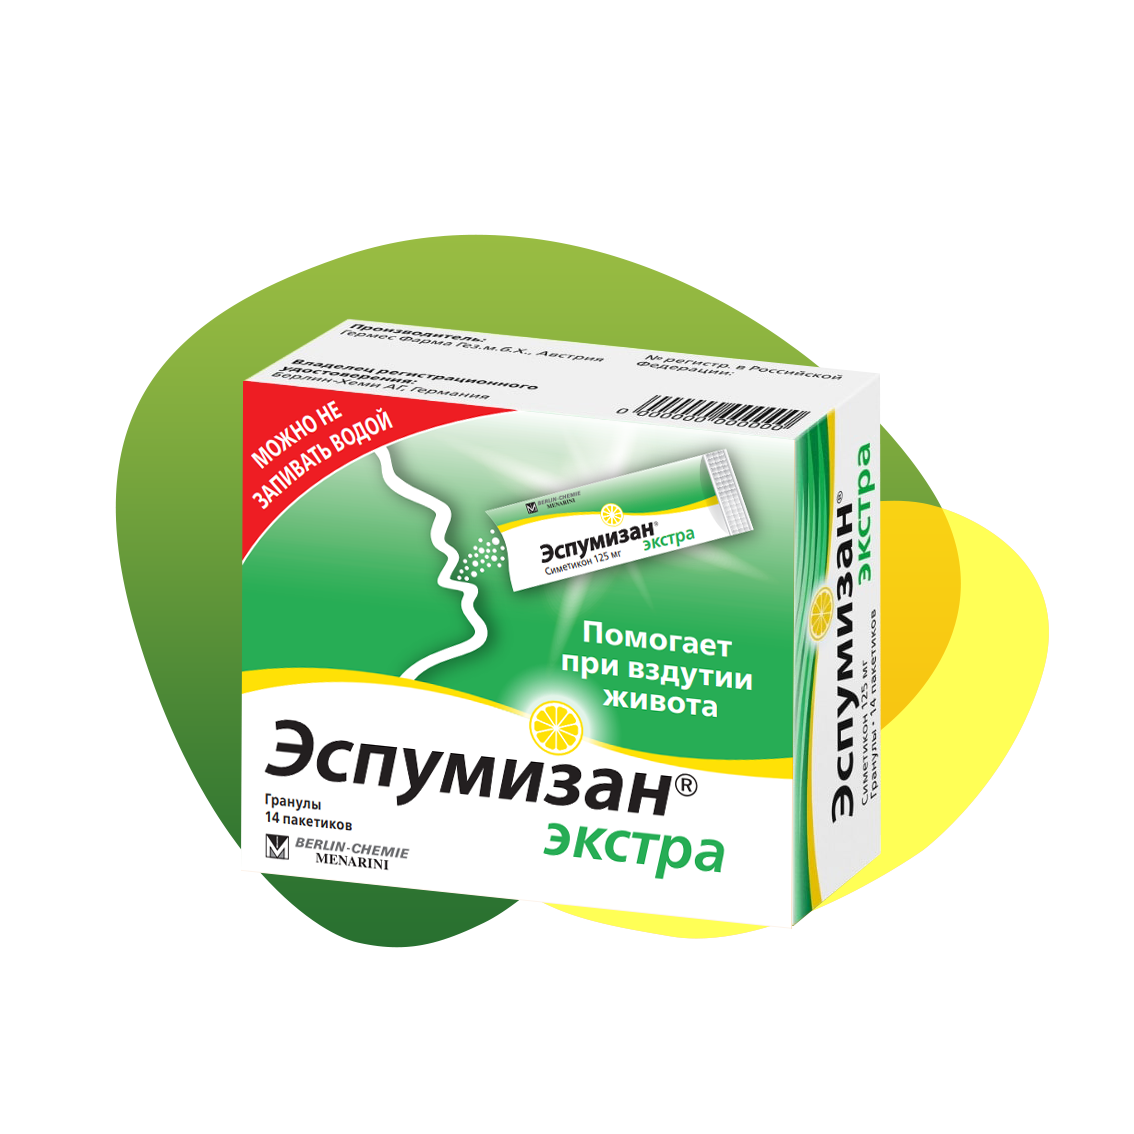 Packaging of Espumisan Easy 125 mg Granules